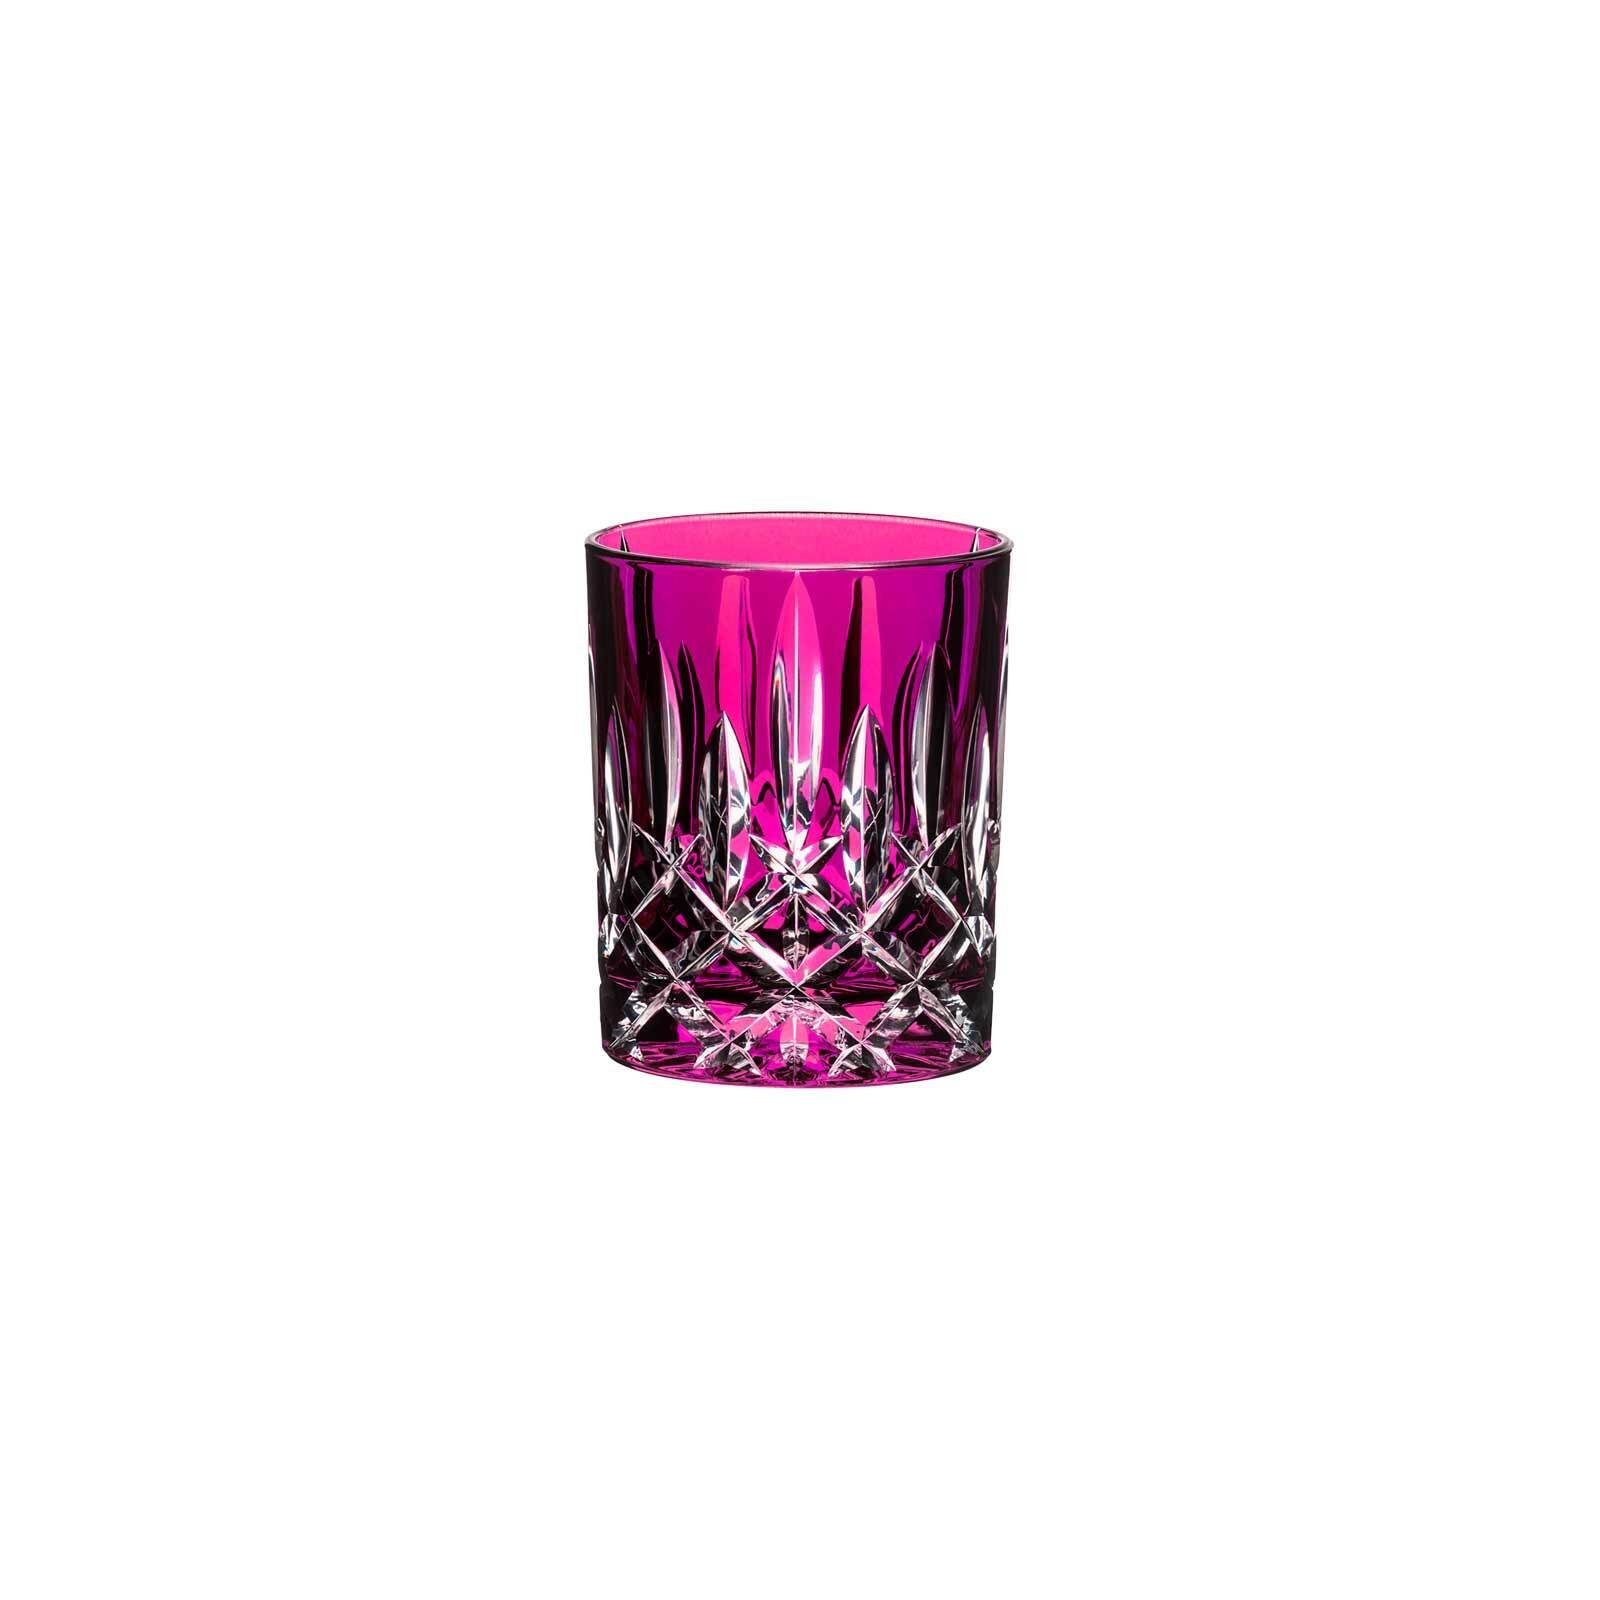 Laudon Whiskyglas ml, RIEDEL 295 Whiskyglas Glas Glas Pink